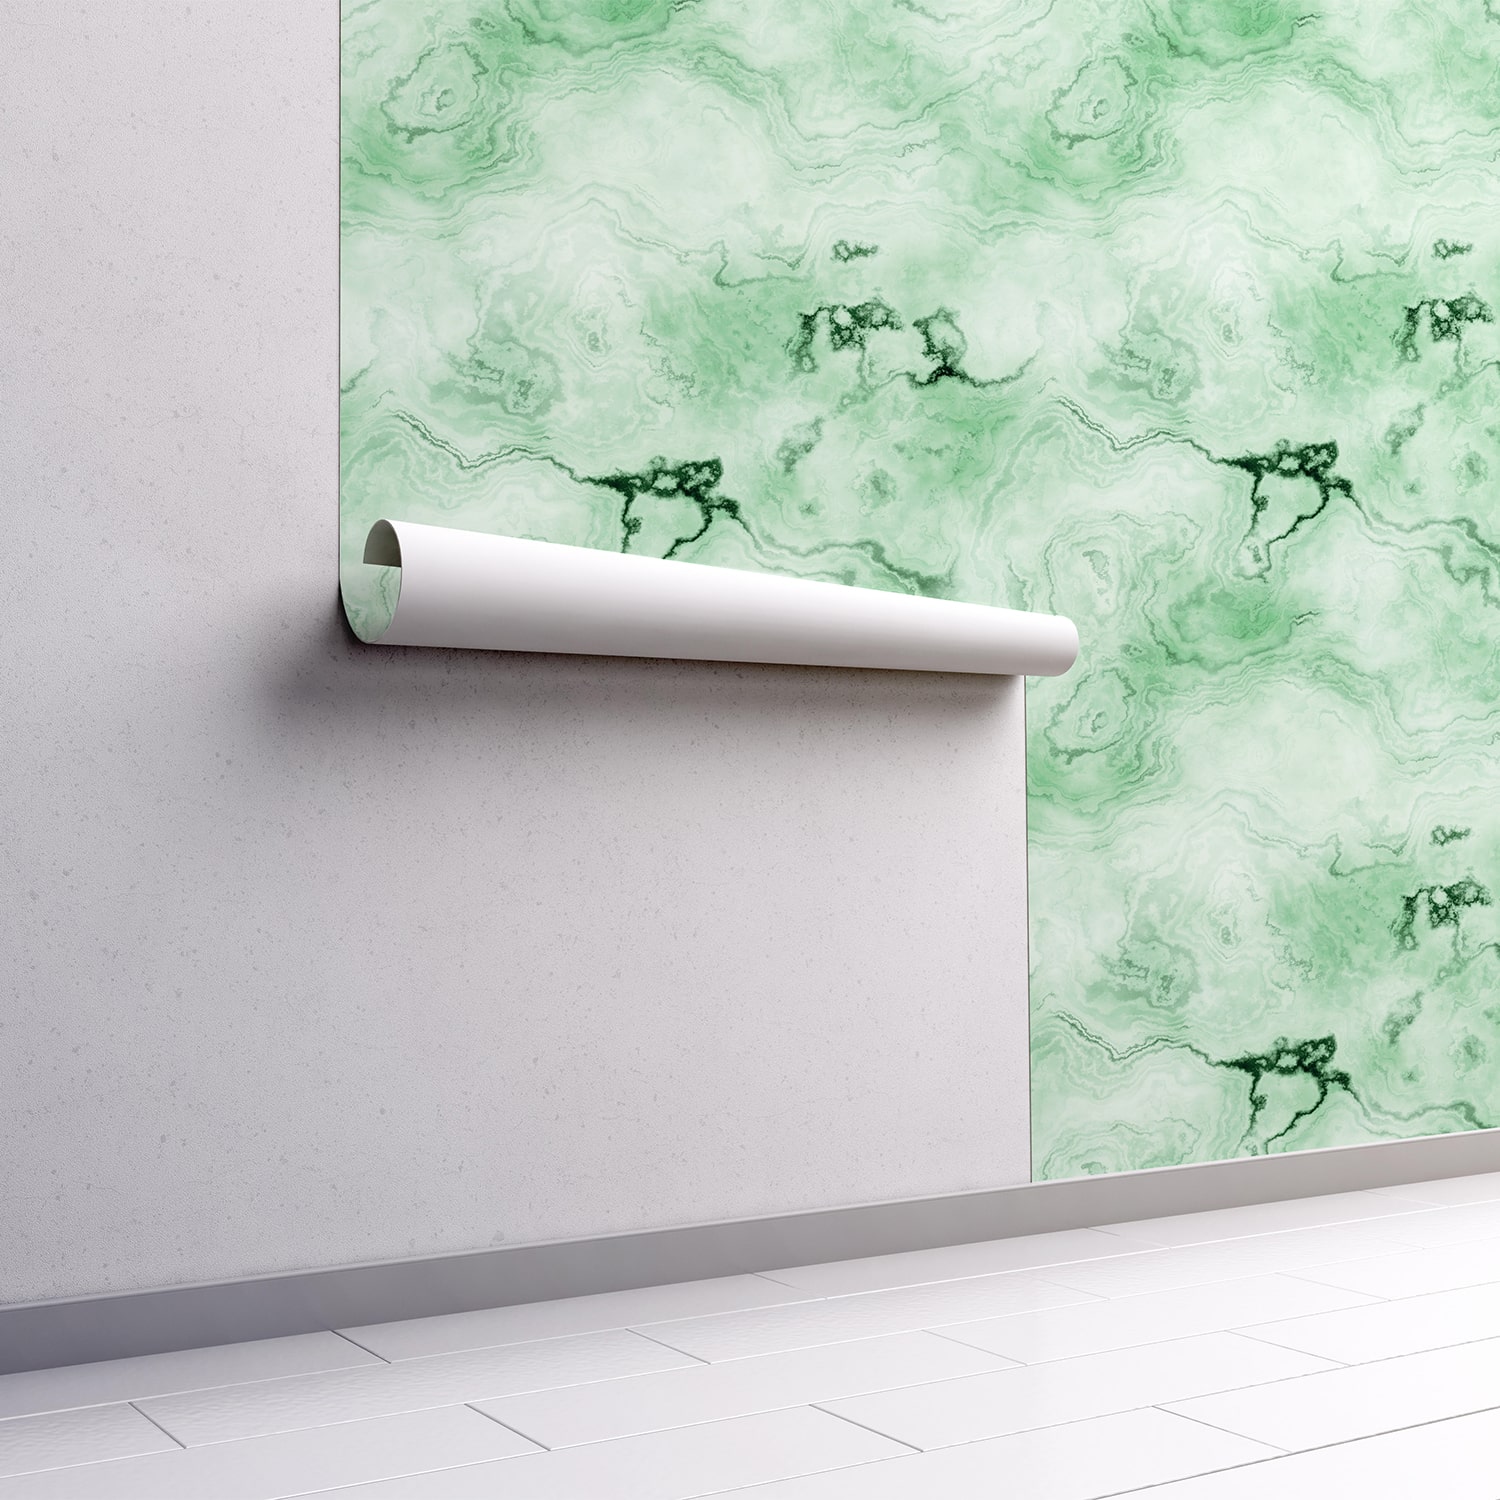 PP96-mur.rouleau-papier-peint-adhesif-decoratif-revetement-vinyle-motifs-effet-marbre-vert-renovation-meuble-mur-min